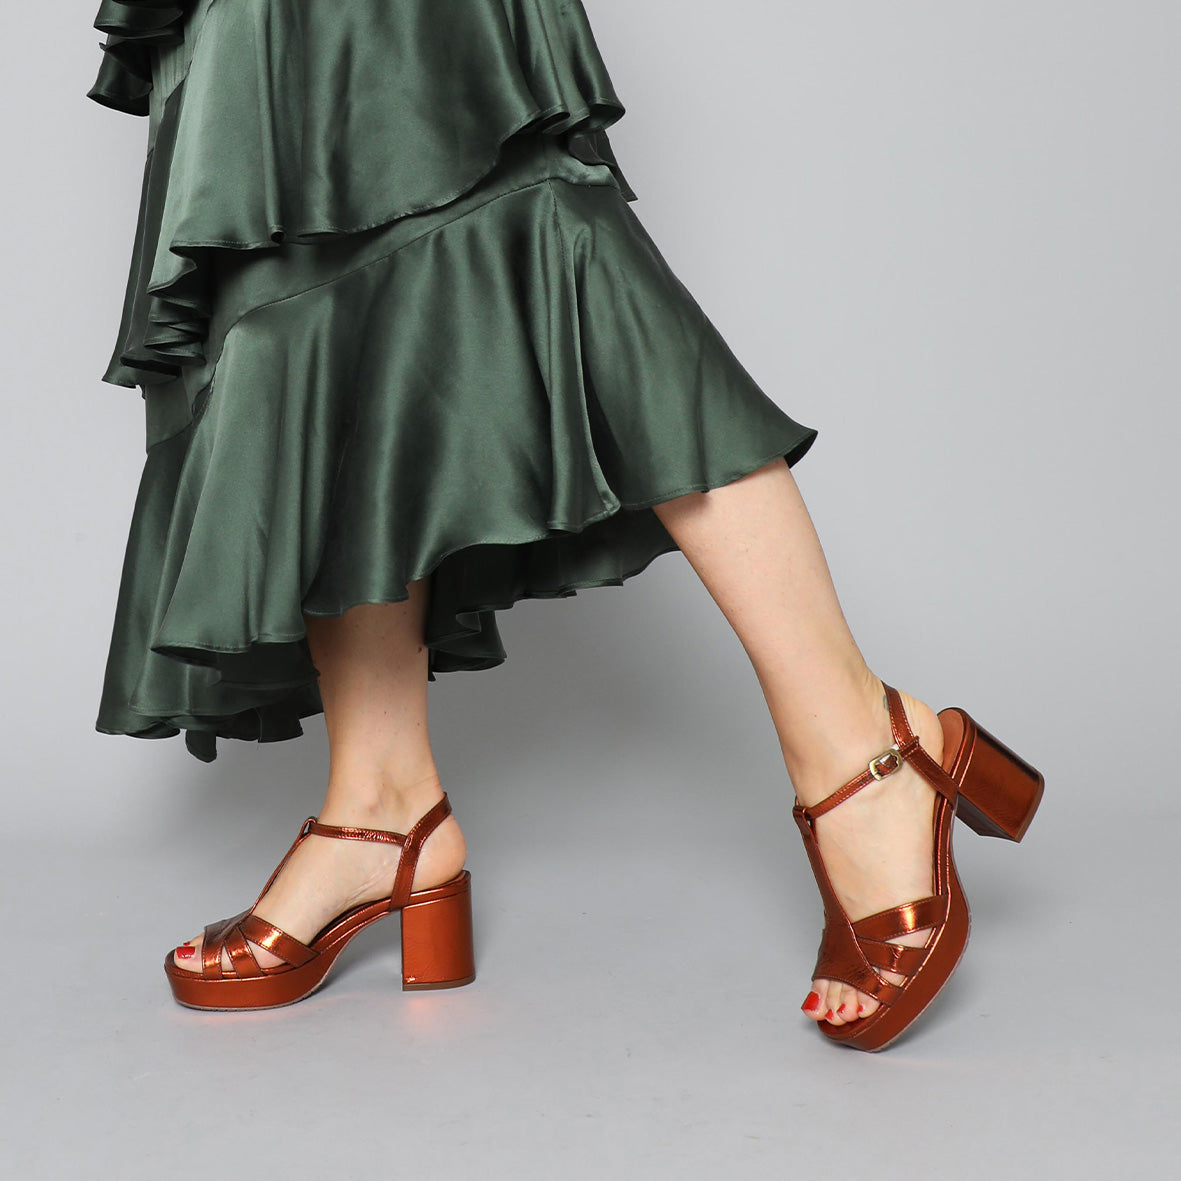 Buy Alley Walk Women's Copper Fashion Sandal - 8 UK at Amazon.in